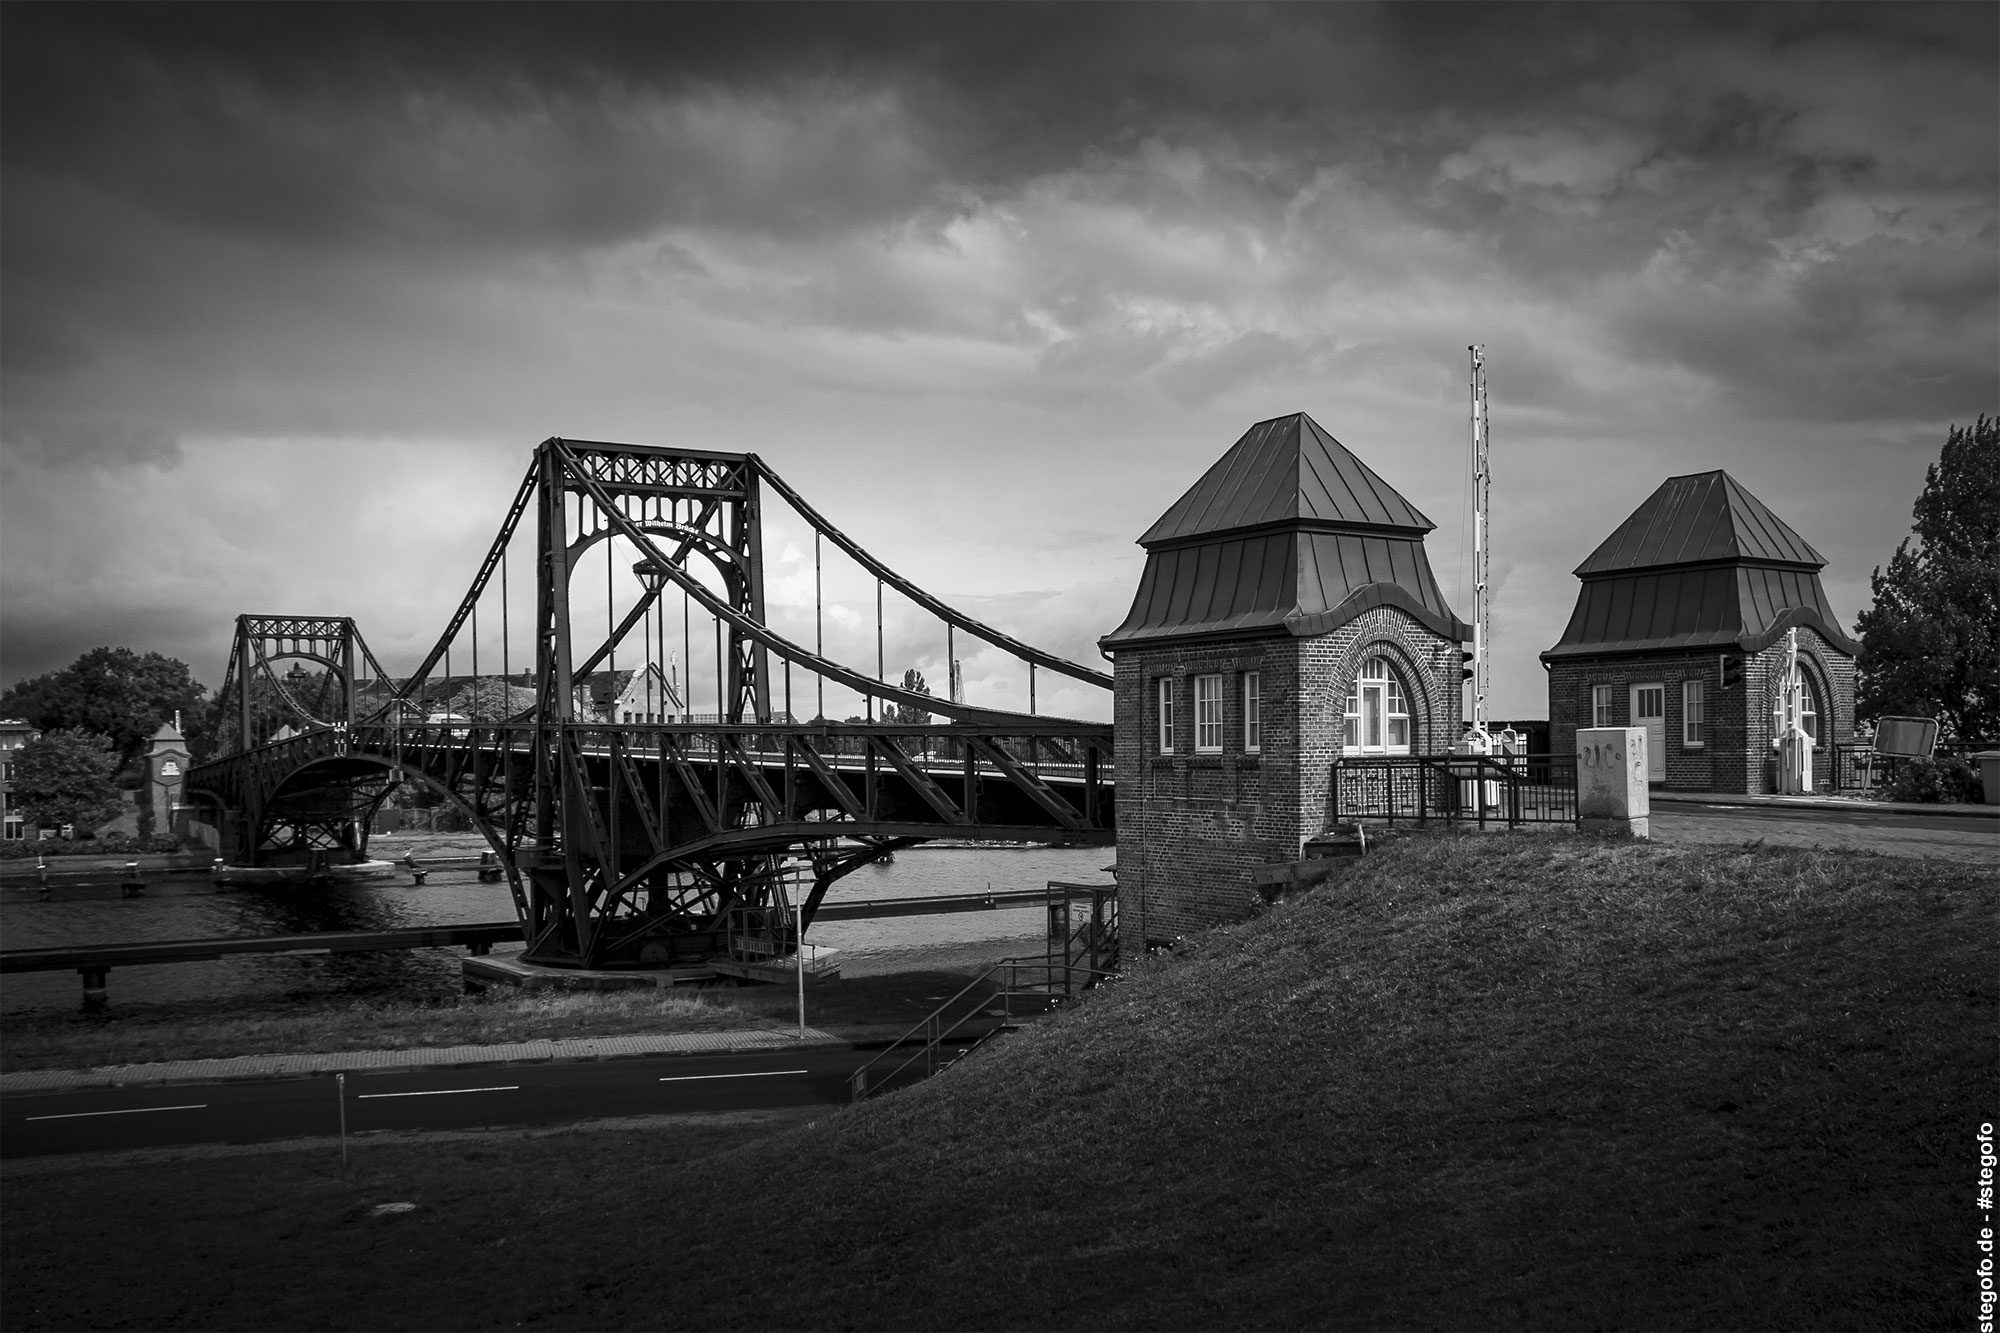 Kaiser-Wilhelm-Brücke in Wilhelmshaven